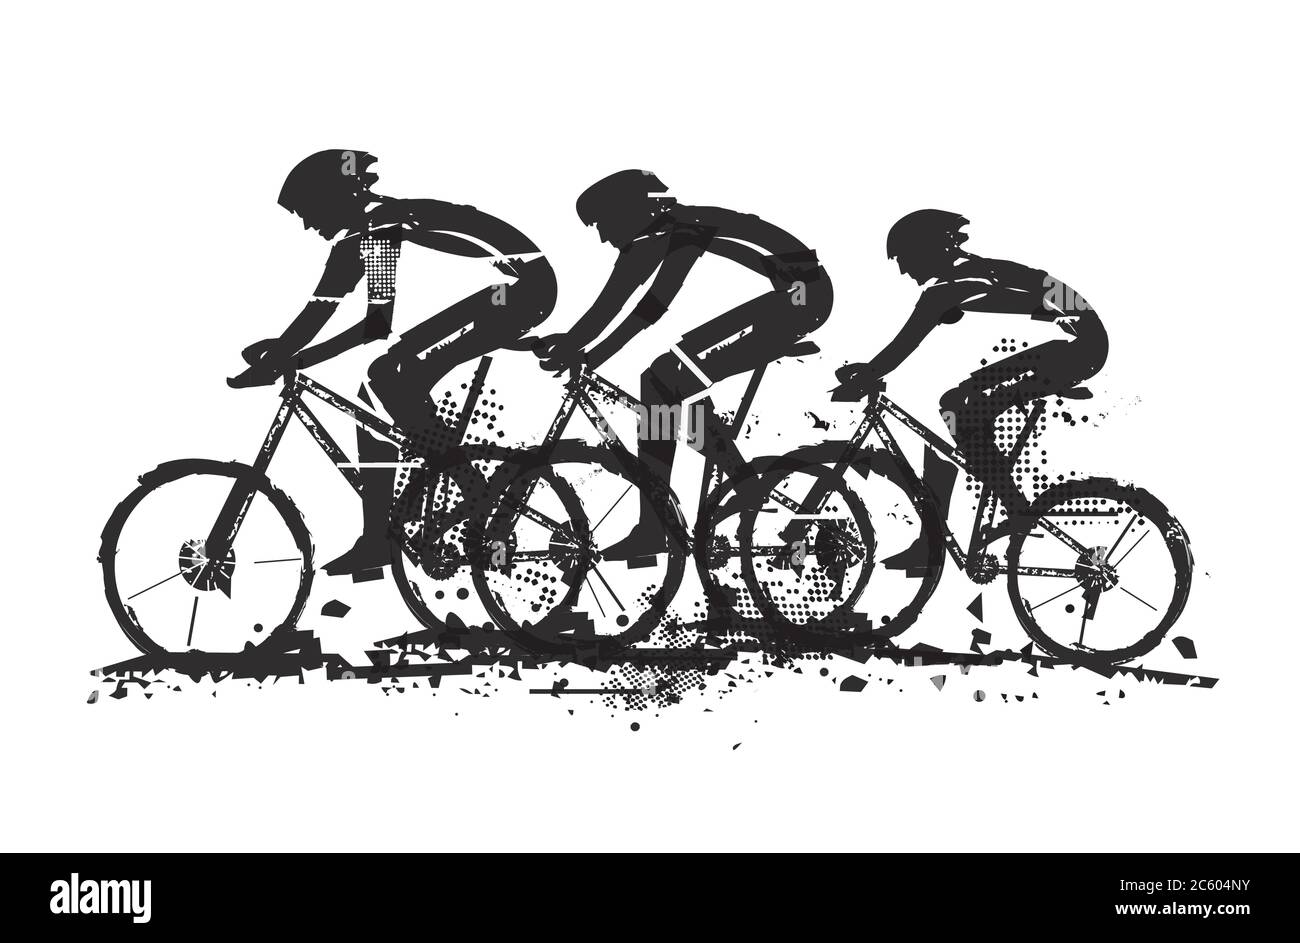 Mountainbiker, Wettbewerb. Ausdrucksstarke Grunge stilisierte schwarze Illustration von drei Radfahrern auf dem Mountainbike. Vektor verfügbar. Stock Vektor